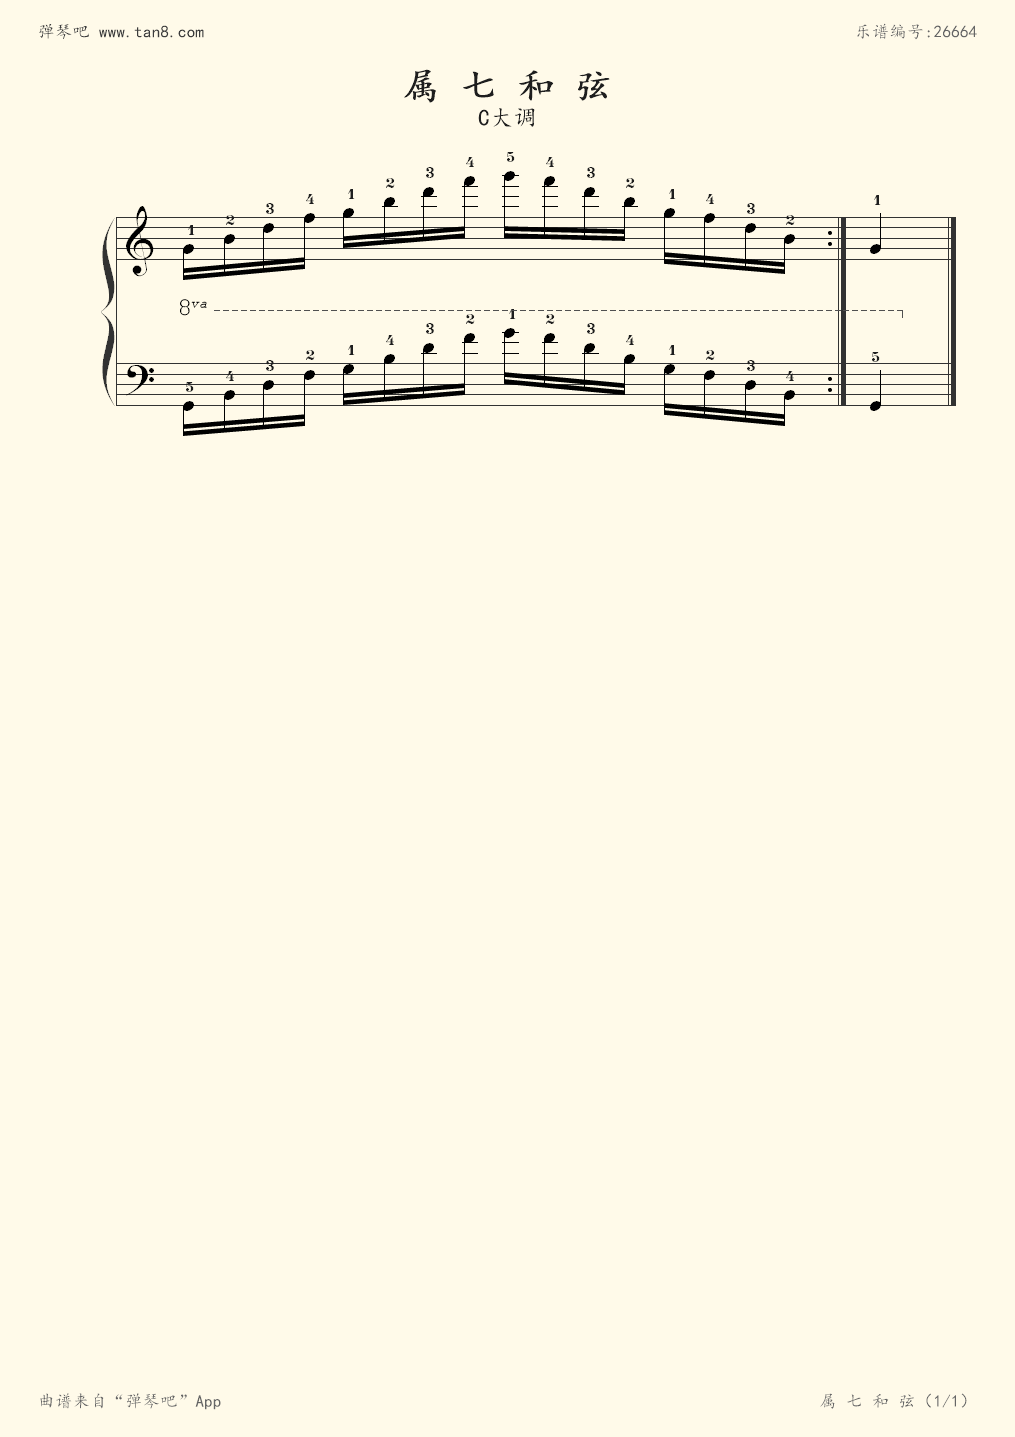 属七和弦(c大调) - 上海市钢琴考试定级曲目(2013版) - 第 1 页